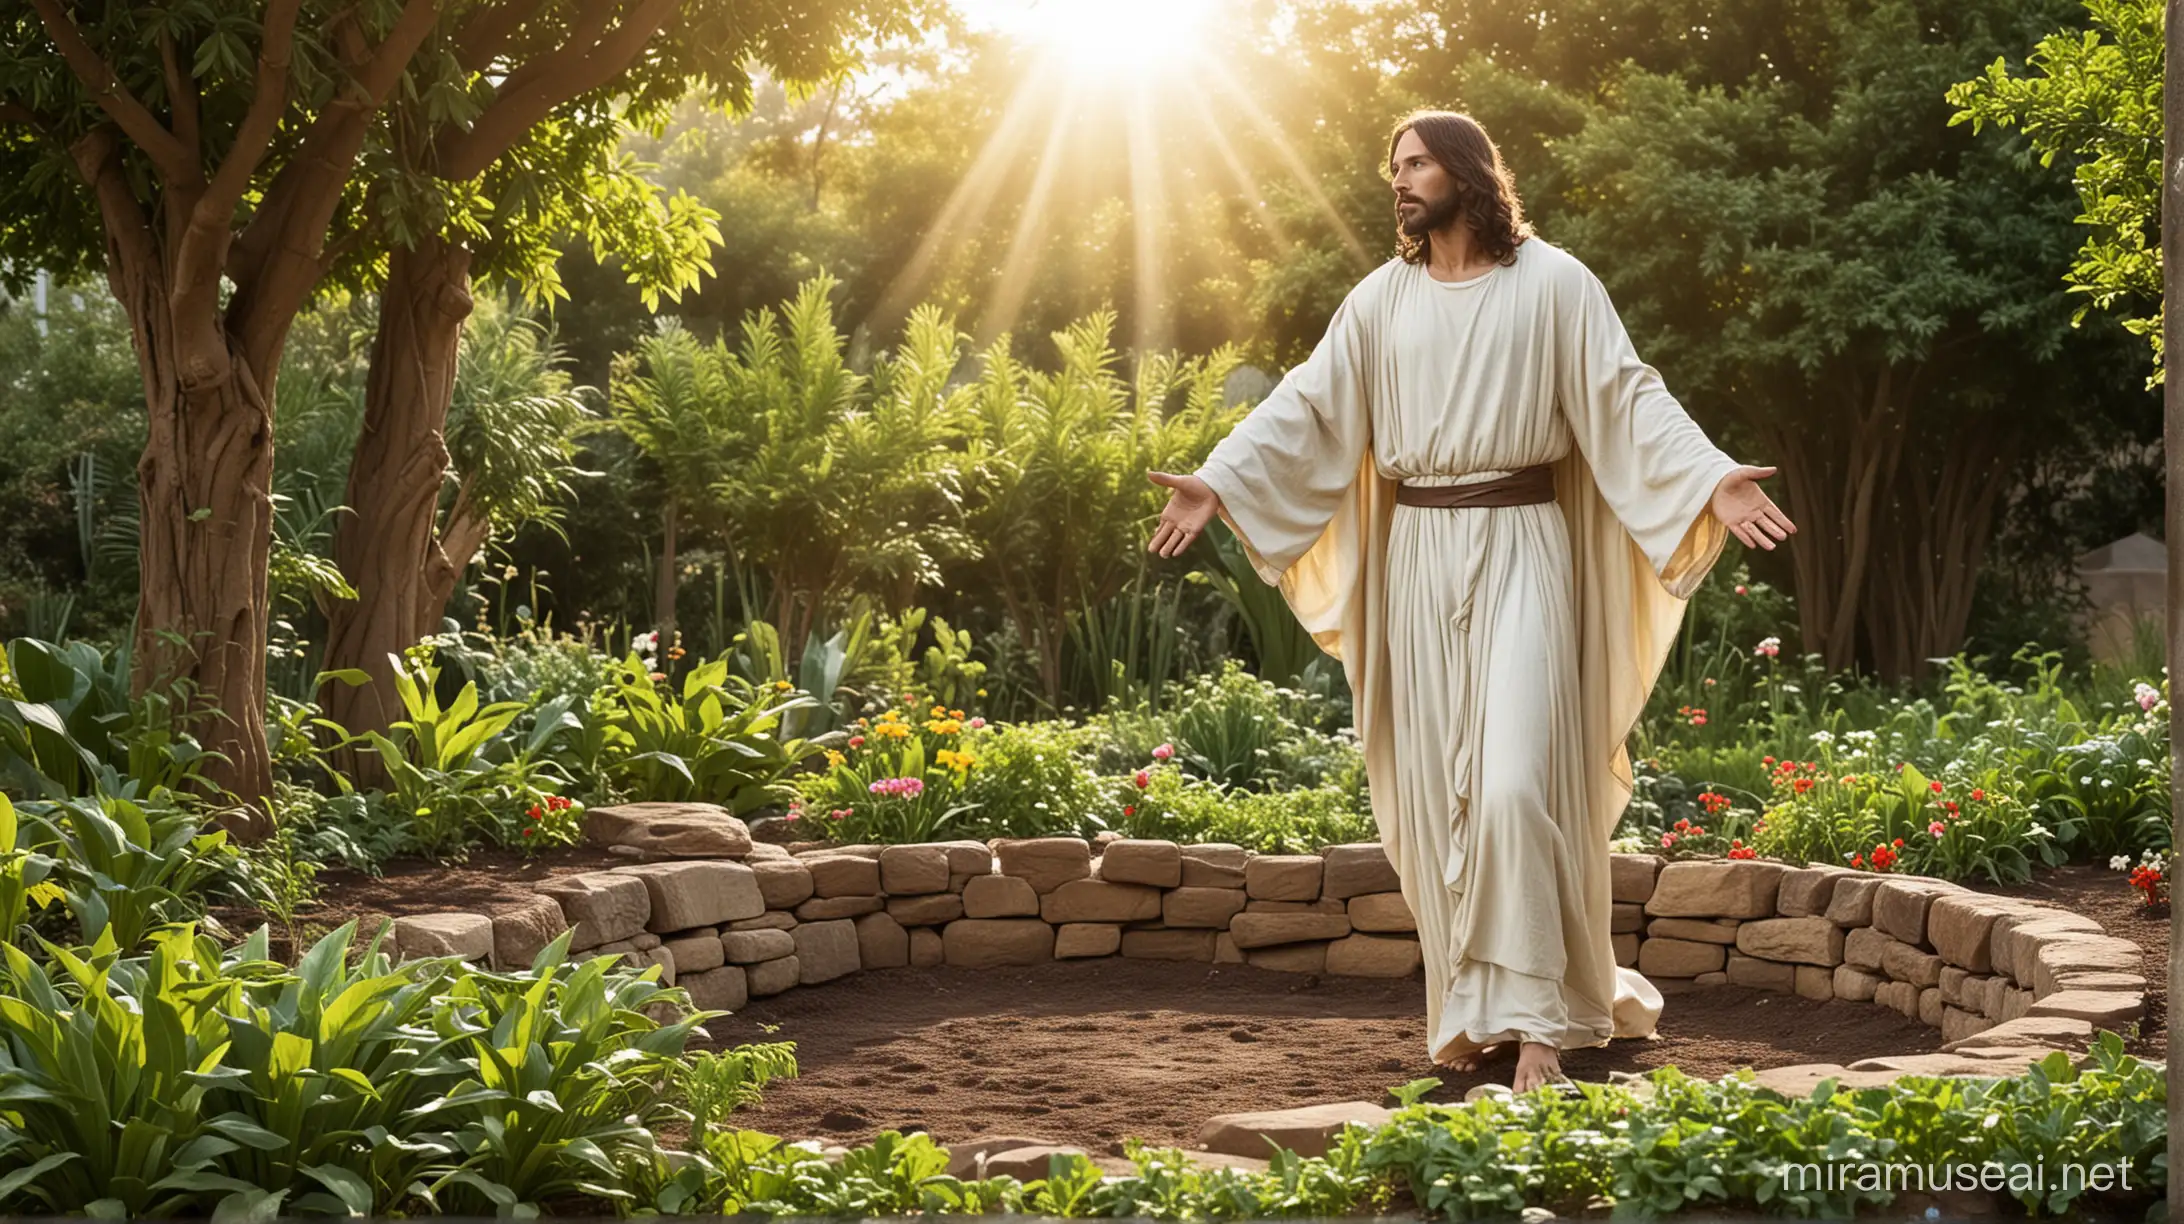 Risen Jesus Christ in garden 
